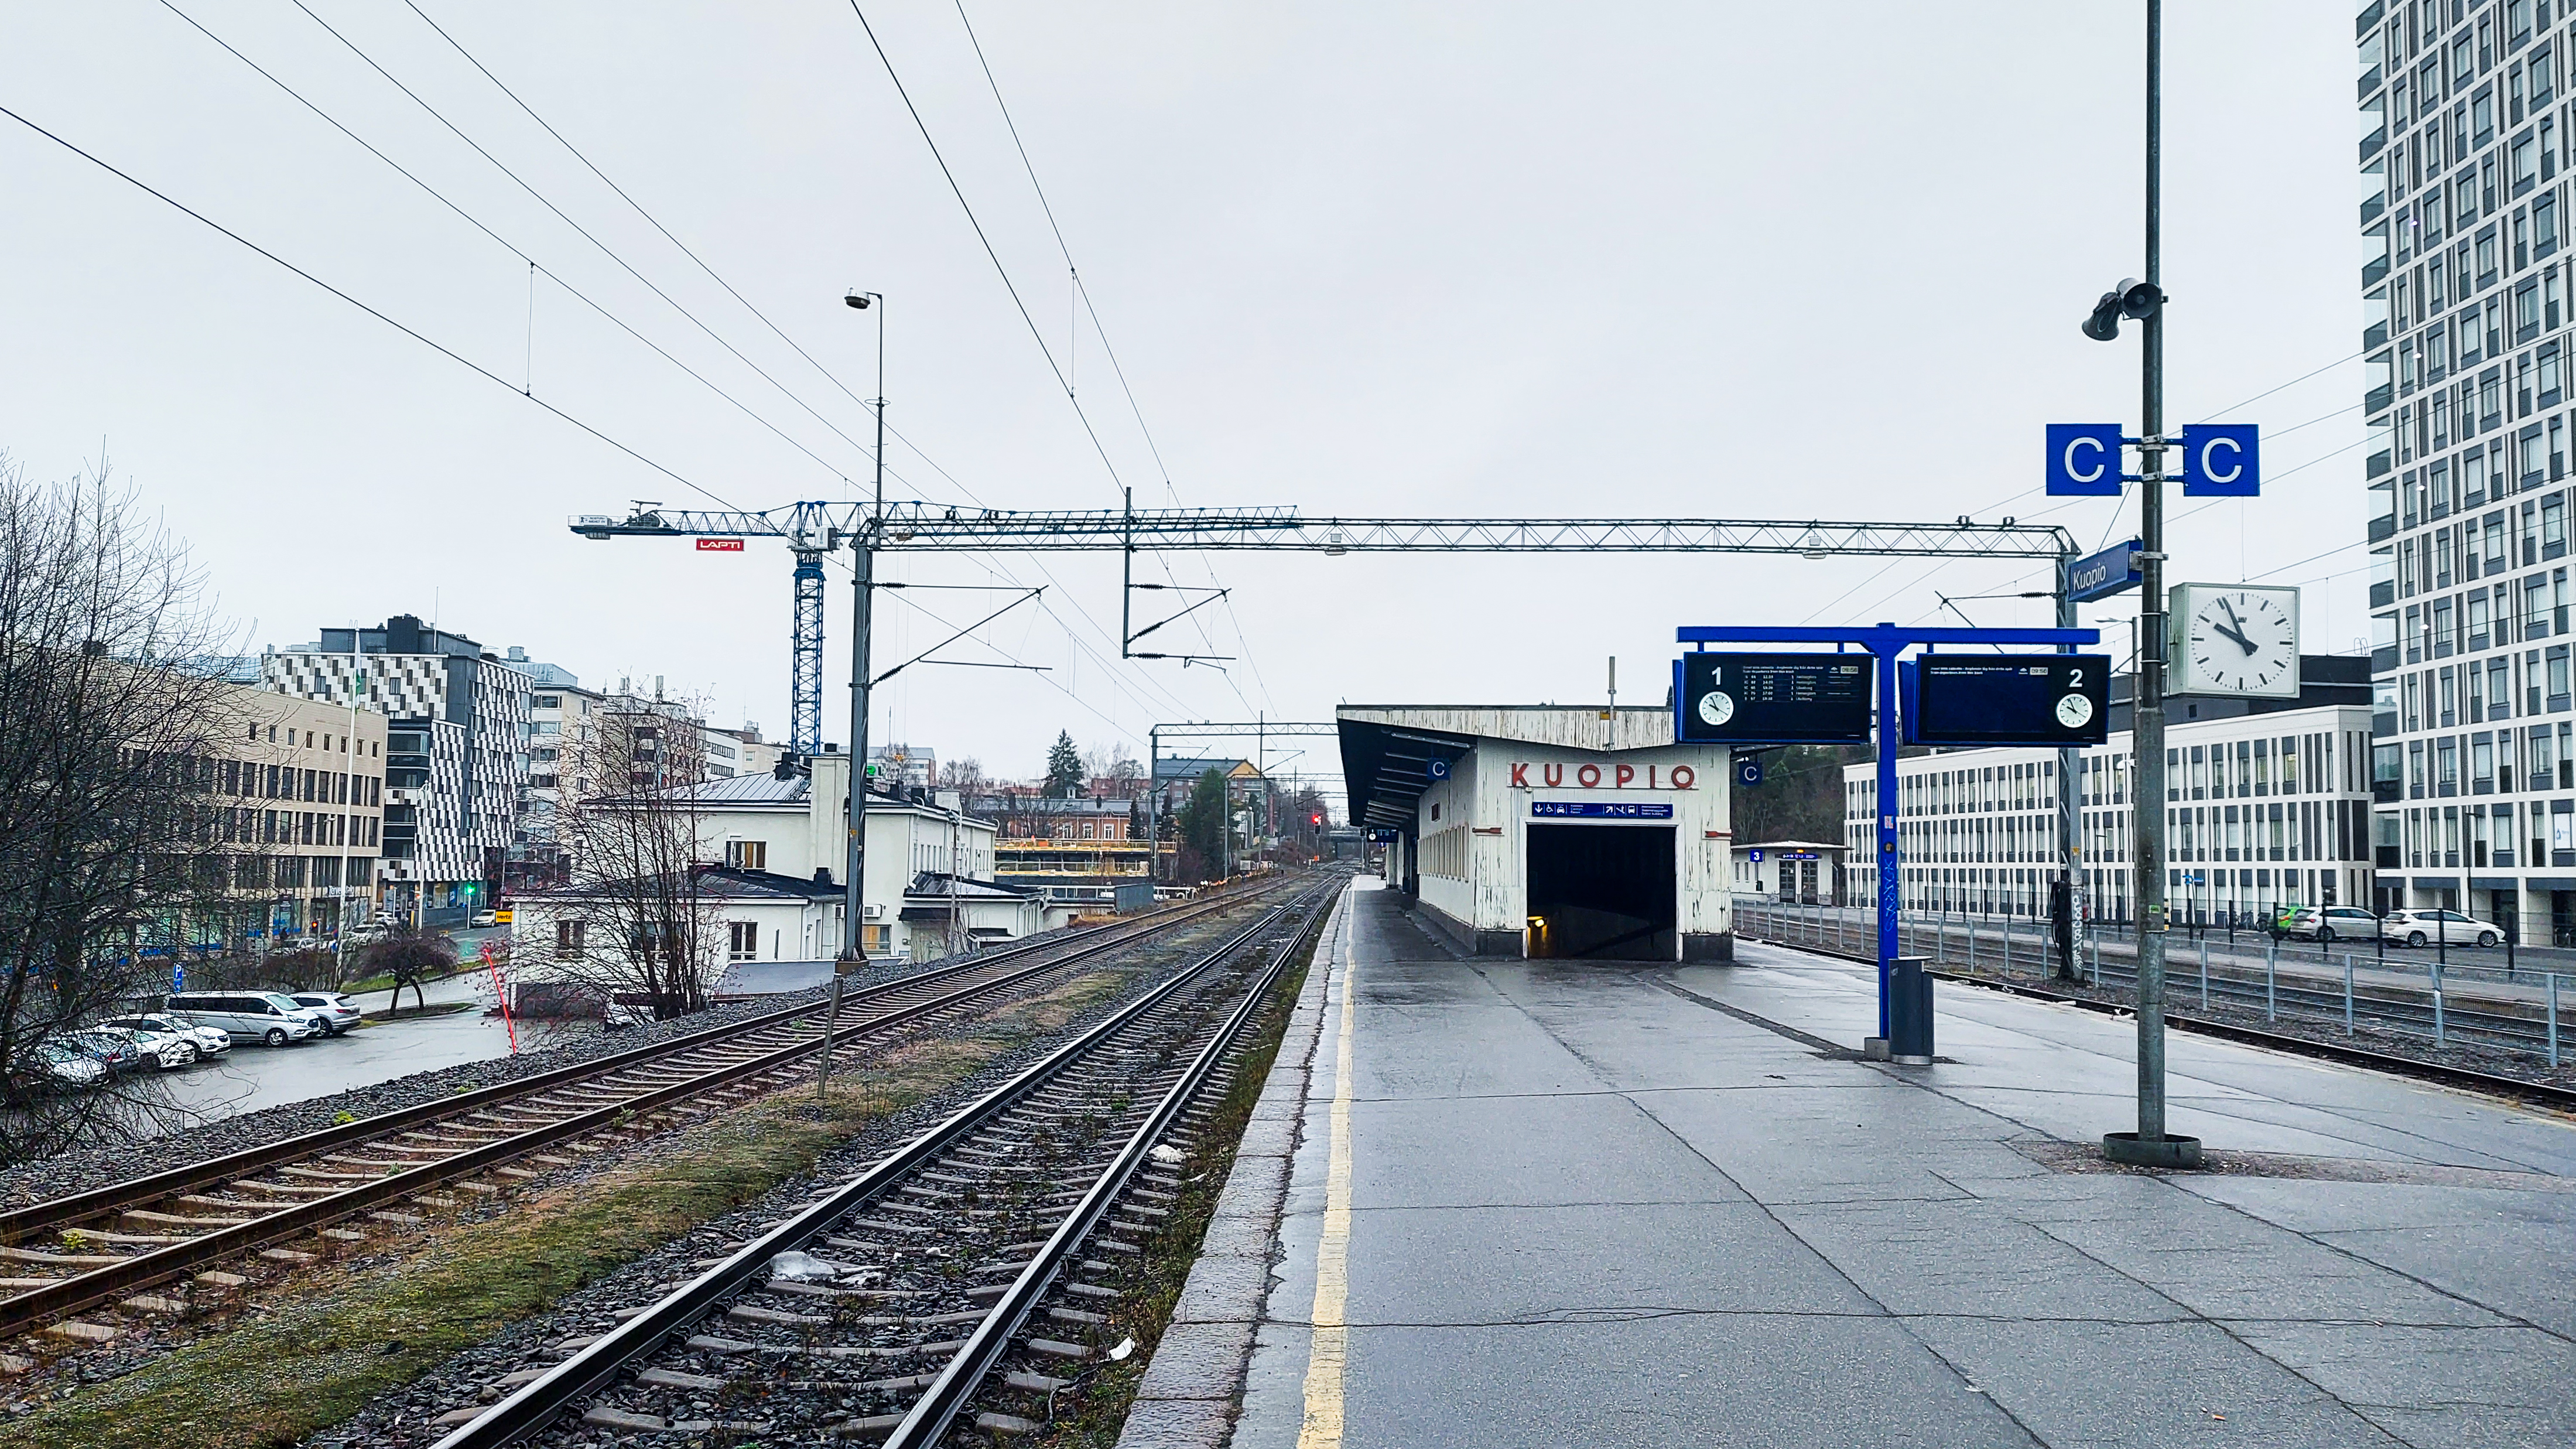 Kuopion ratapiha -hankkeen kuvituskuva, jossa on näkymä Kuopion juna-aseman katoksesta ja kyltistä, jossa lukee Kuopio